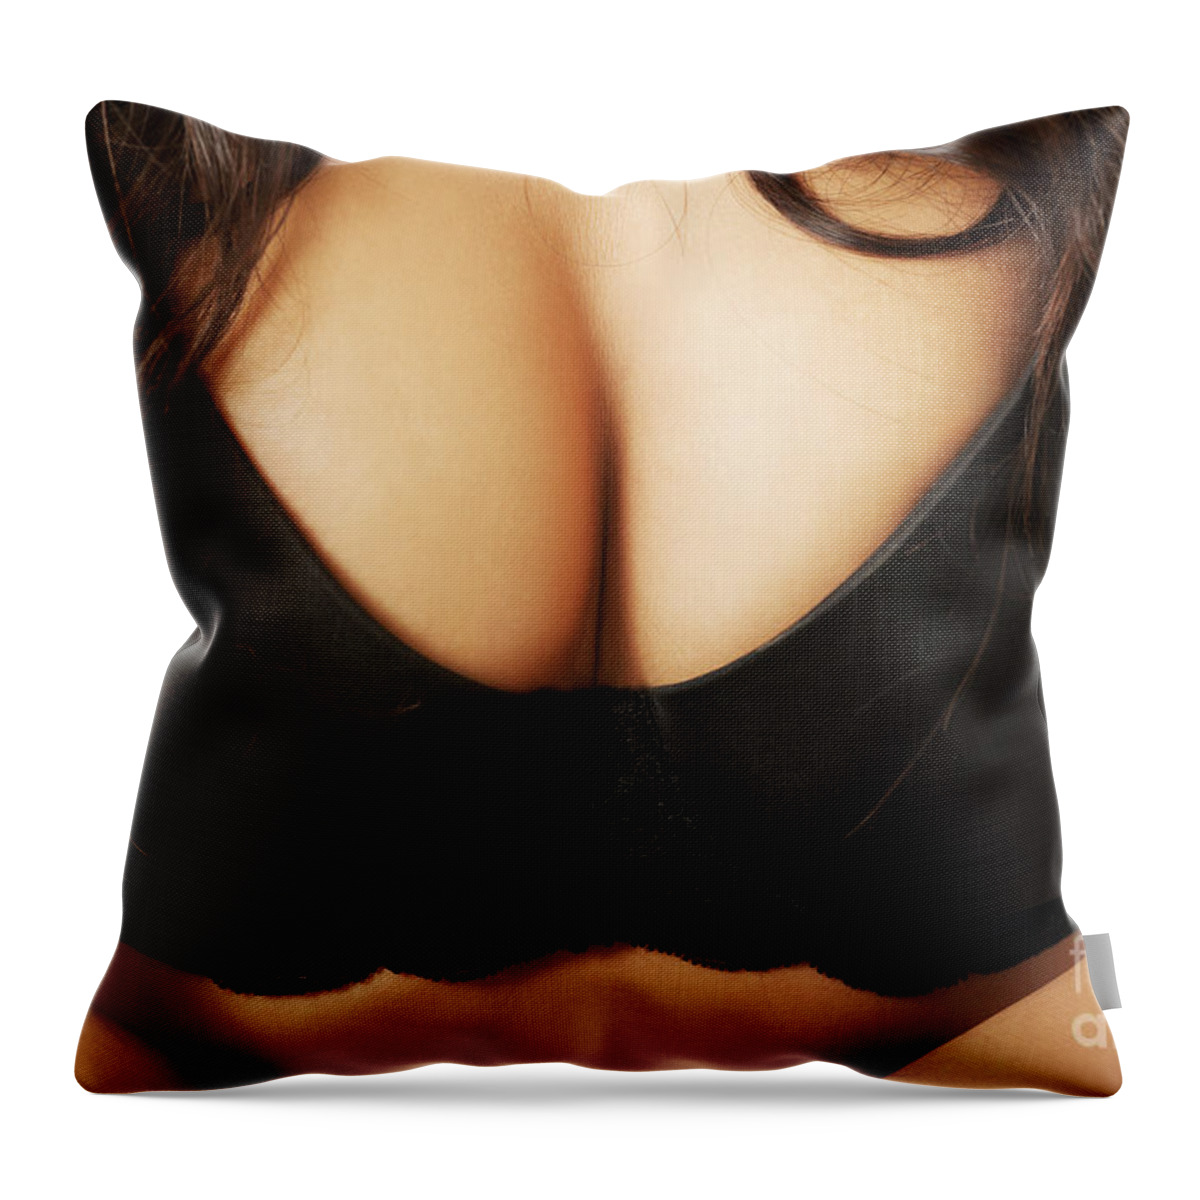 Close up on female boobs in black bra Weekender Tote Bag by Piotr Marcinski  - Fine Art America